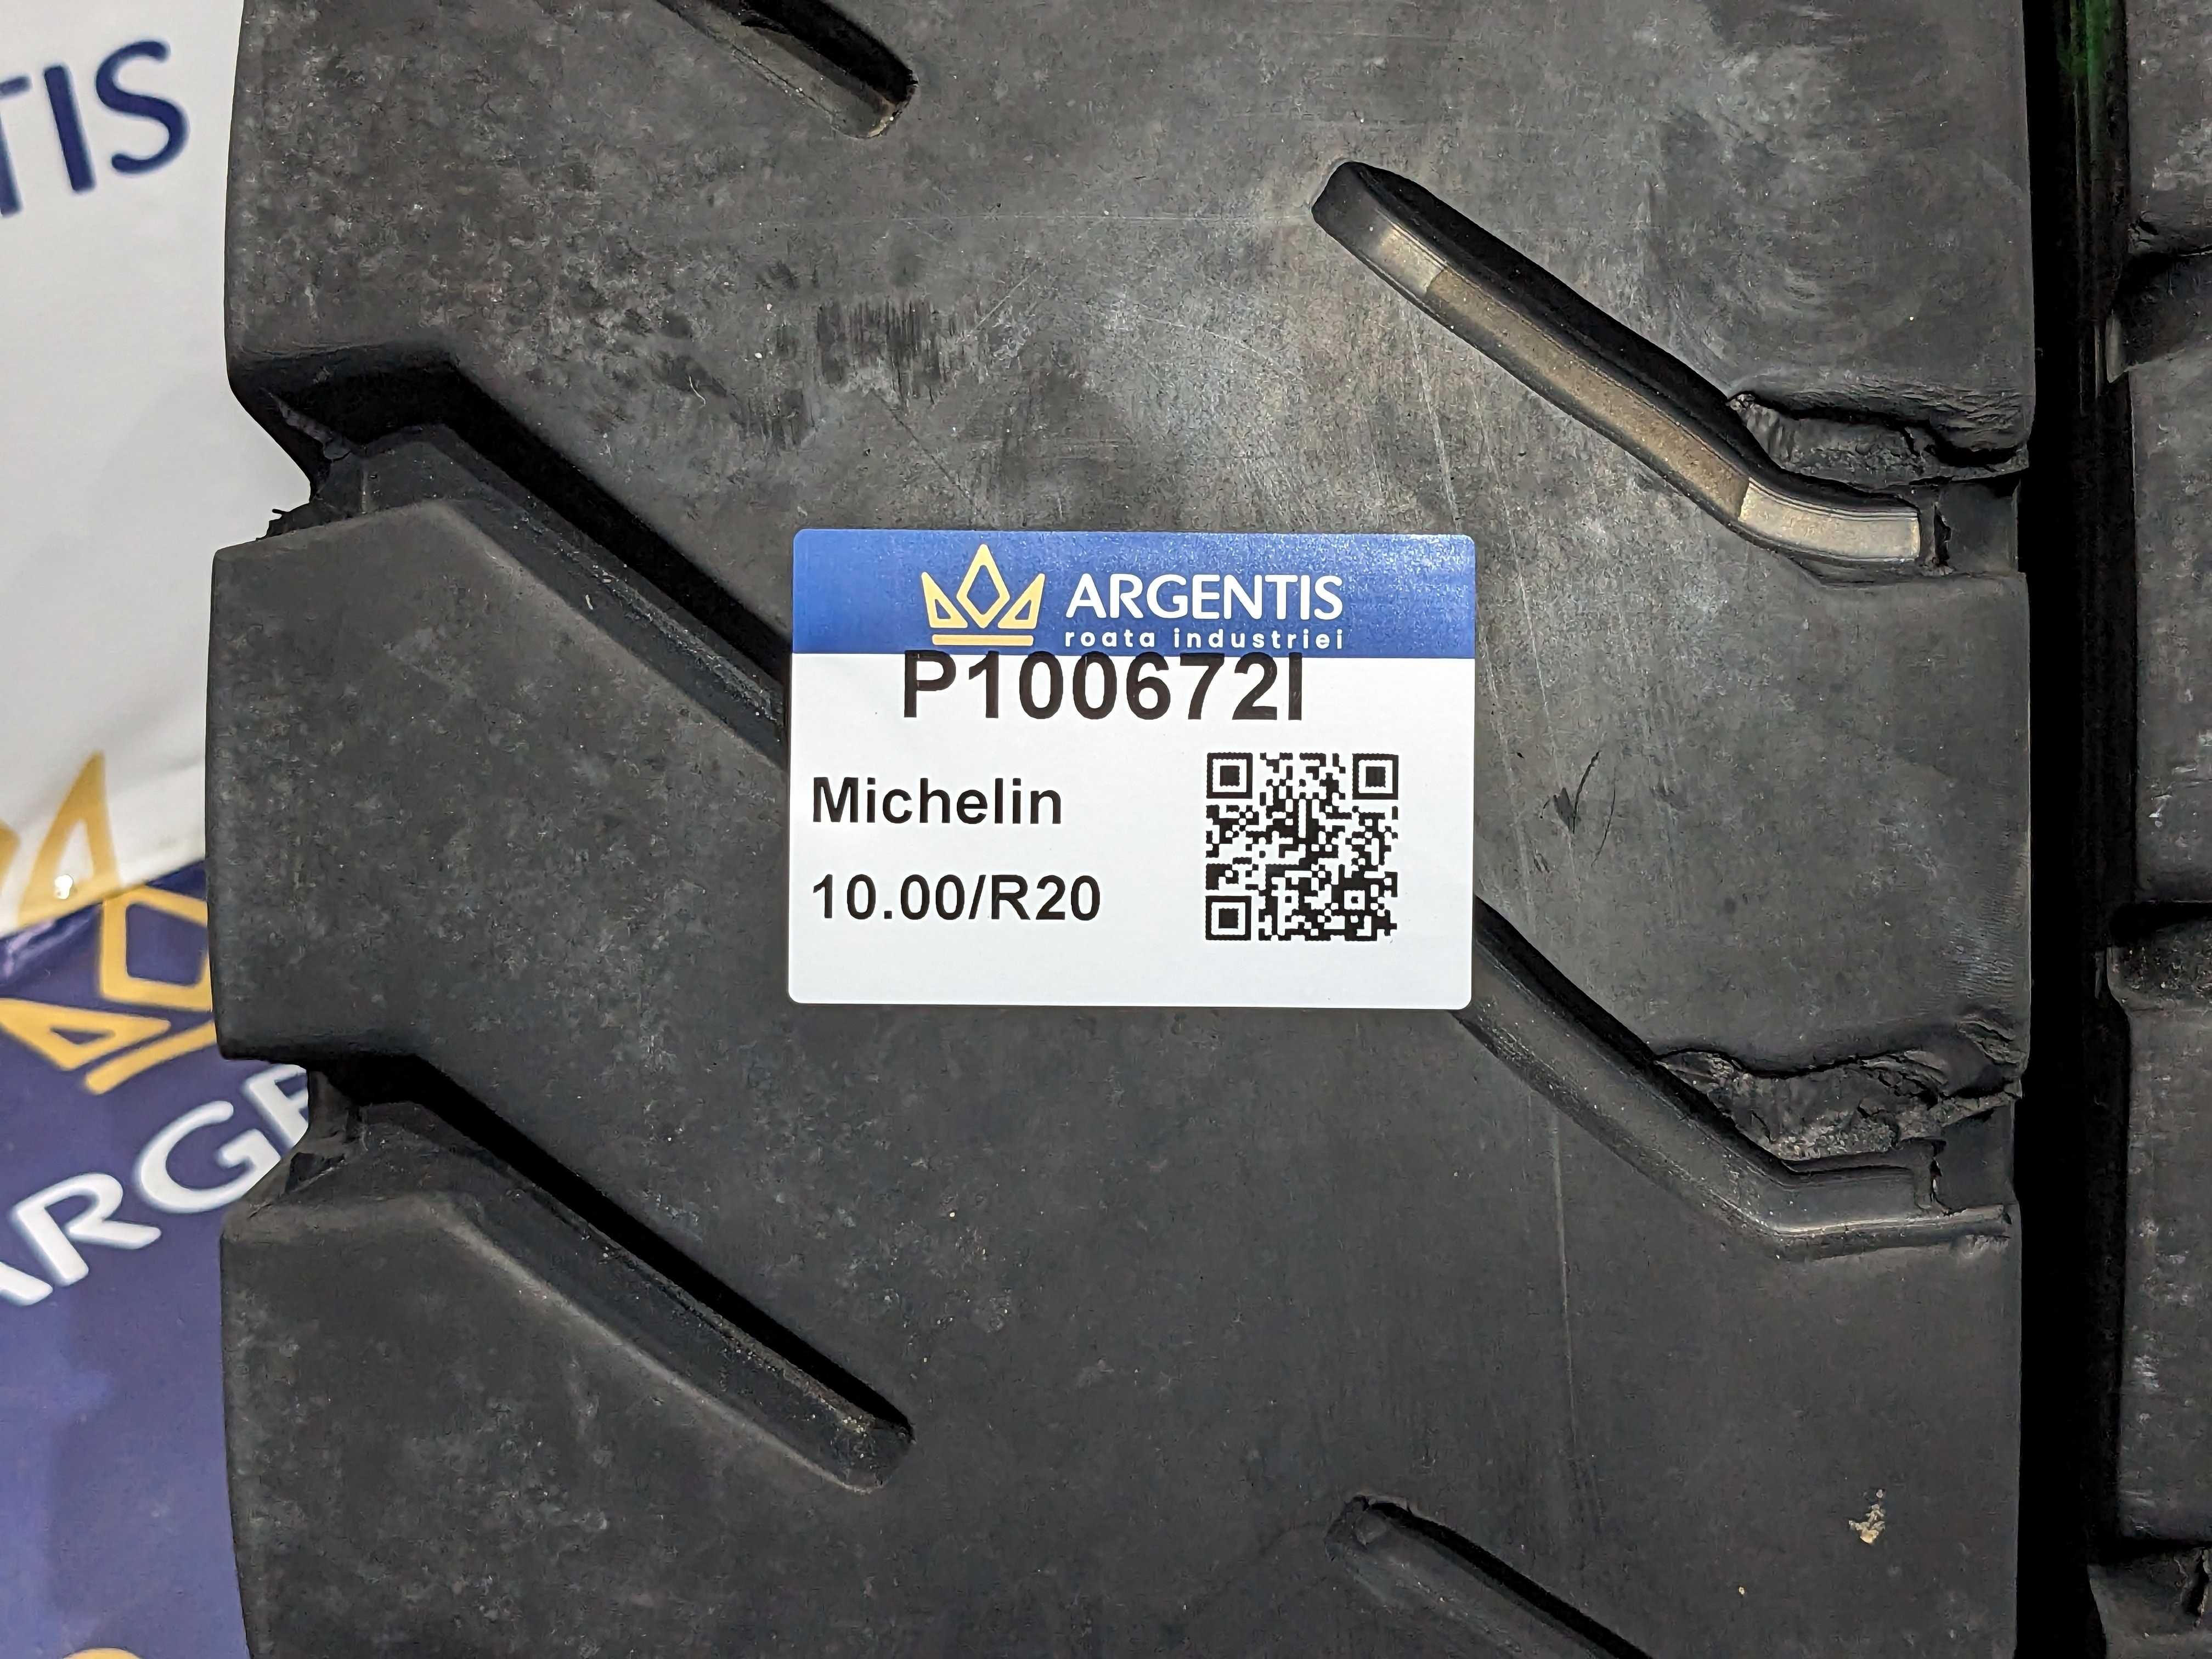 Pereche 2 anvelope 10.00/R20 Michelin (cod P100672I)